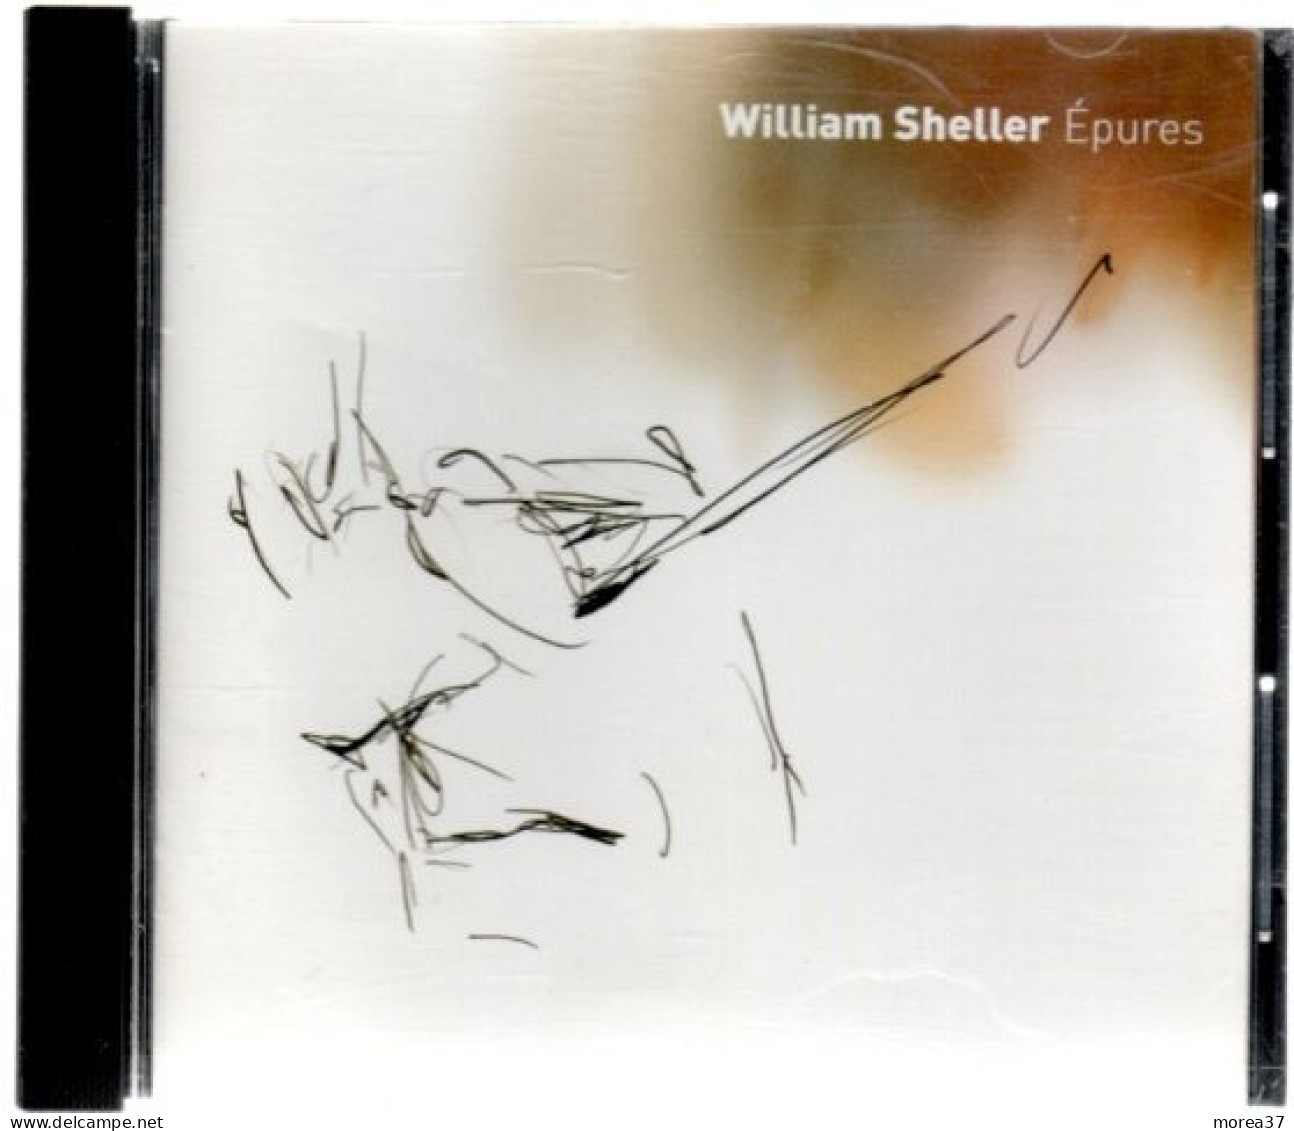 WILLIAM SHELLER  Epures       (REF CD 2) - Sonstige - Franz. Chansons